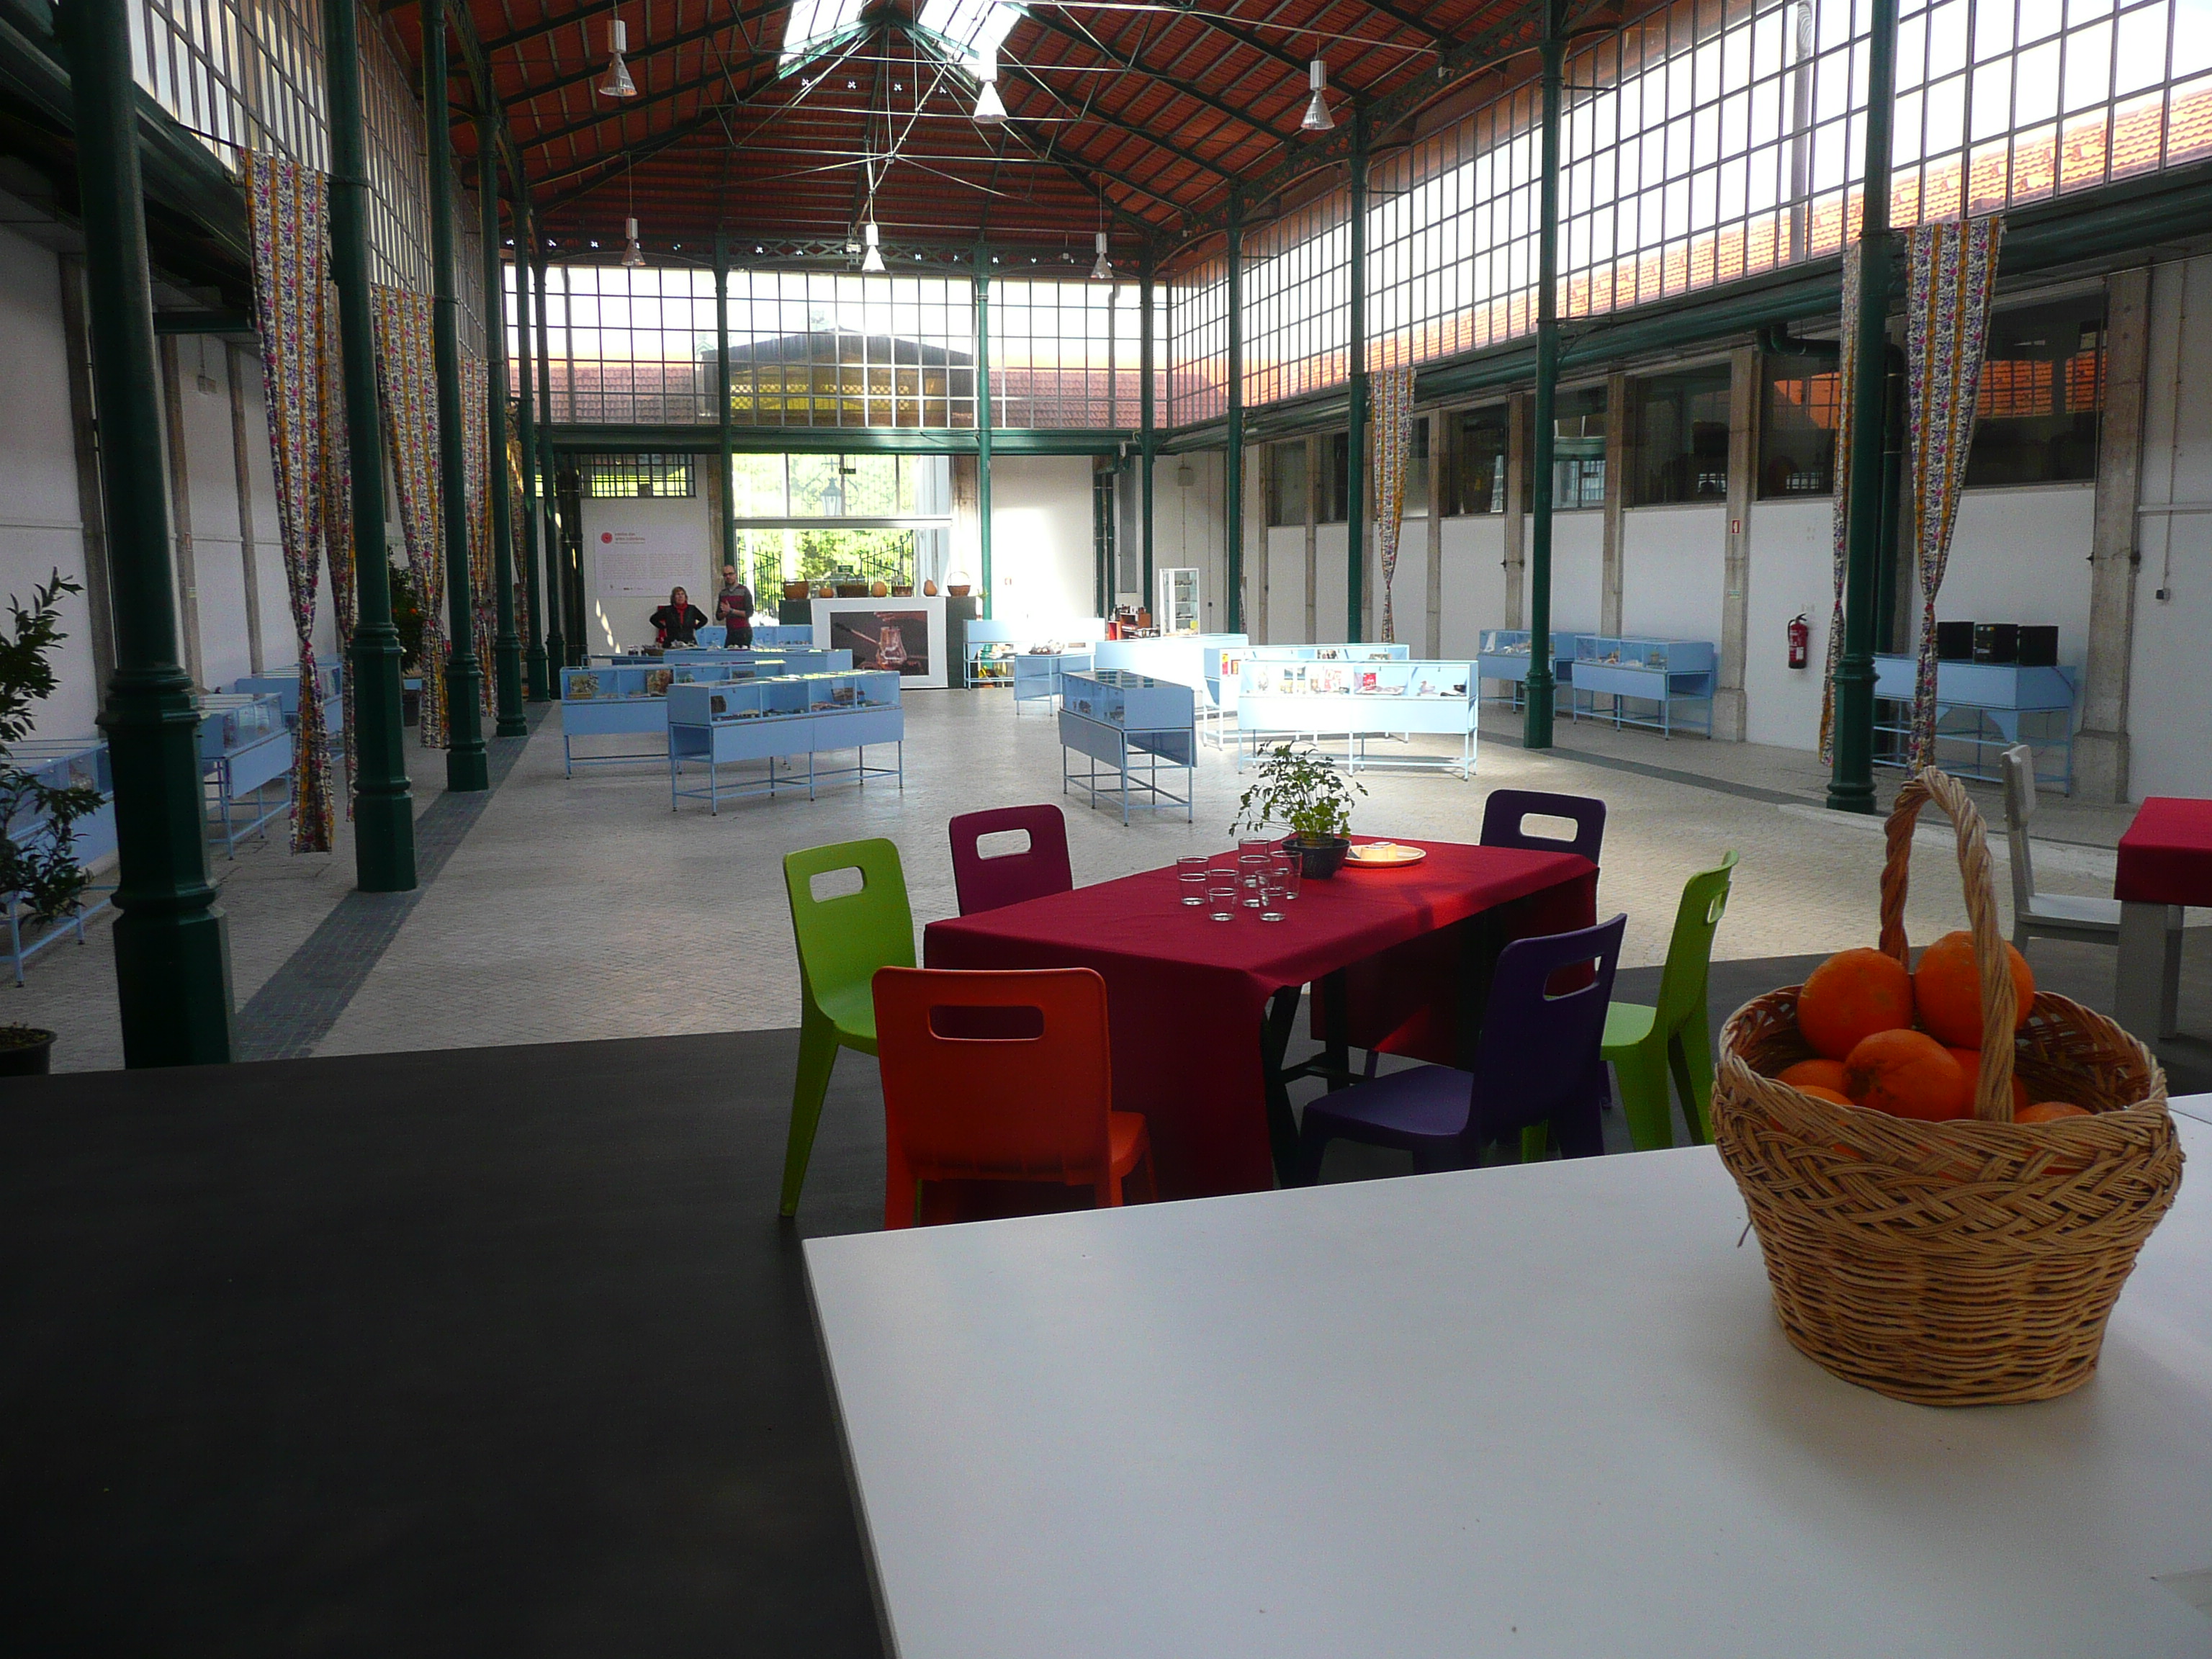 Centro das artes culinarias - gastronomia portoghese lisbona cucina